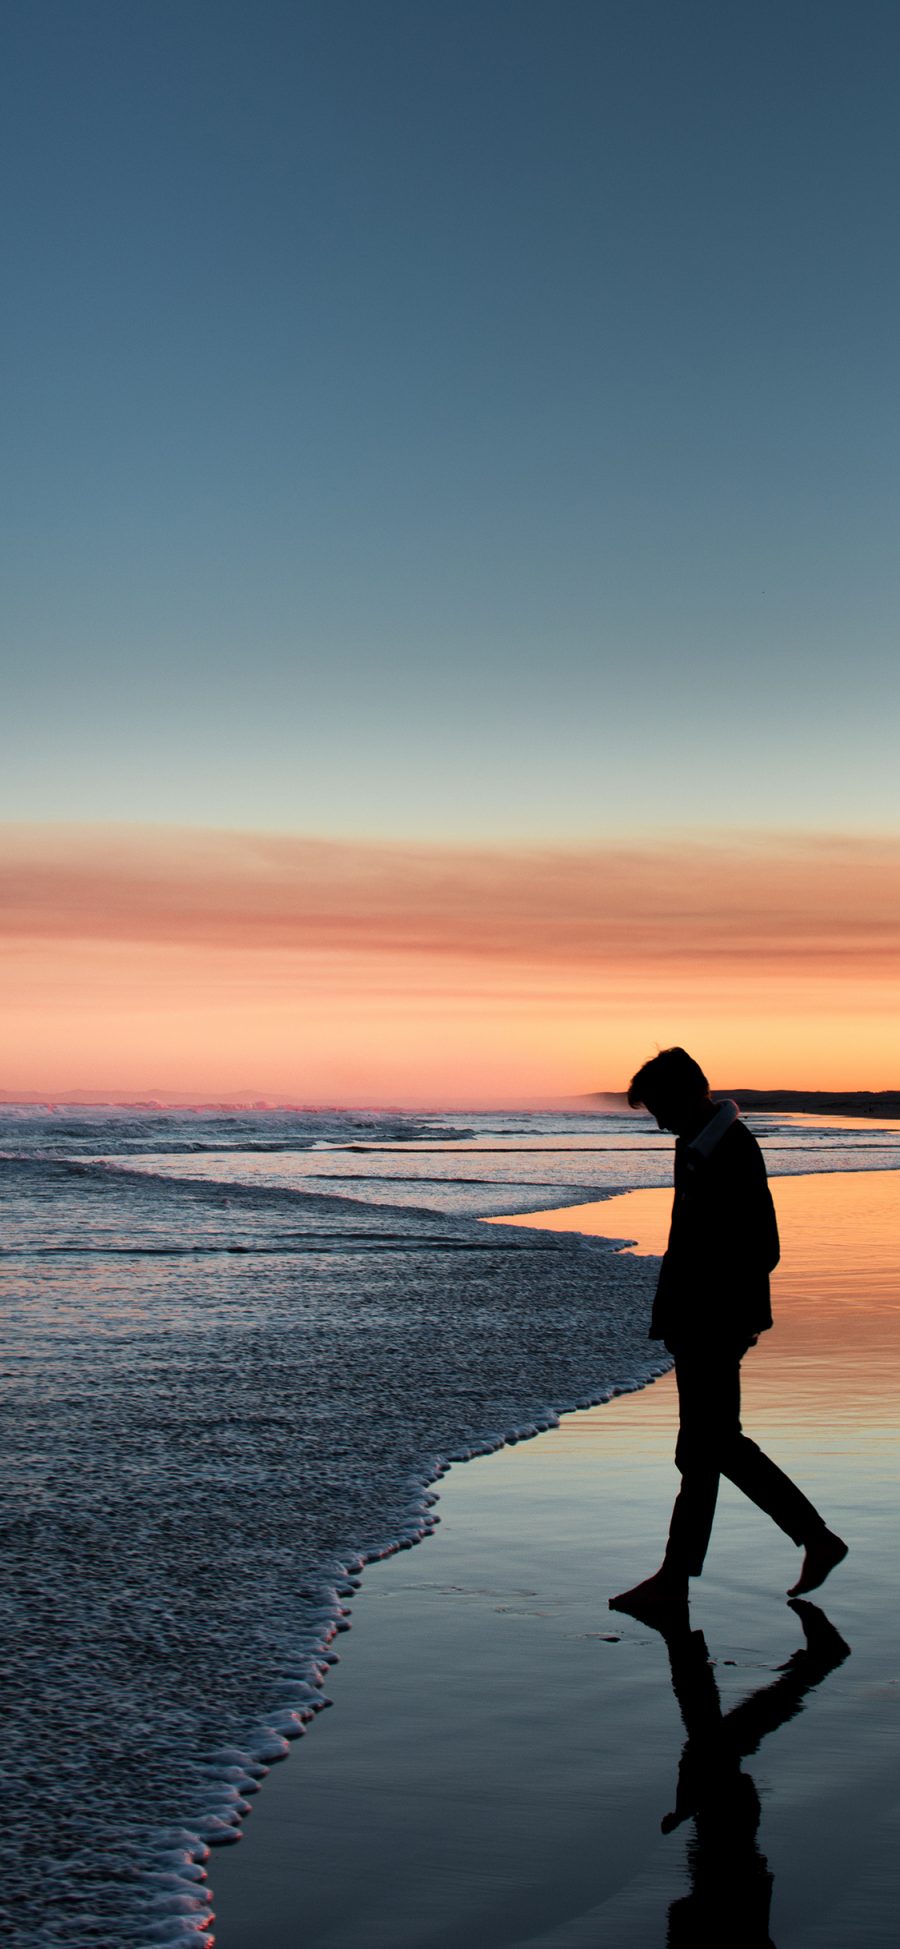 [2436×1125]大海 夕阳美景 男孩 倒影 苹果手机壁纸图片